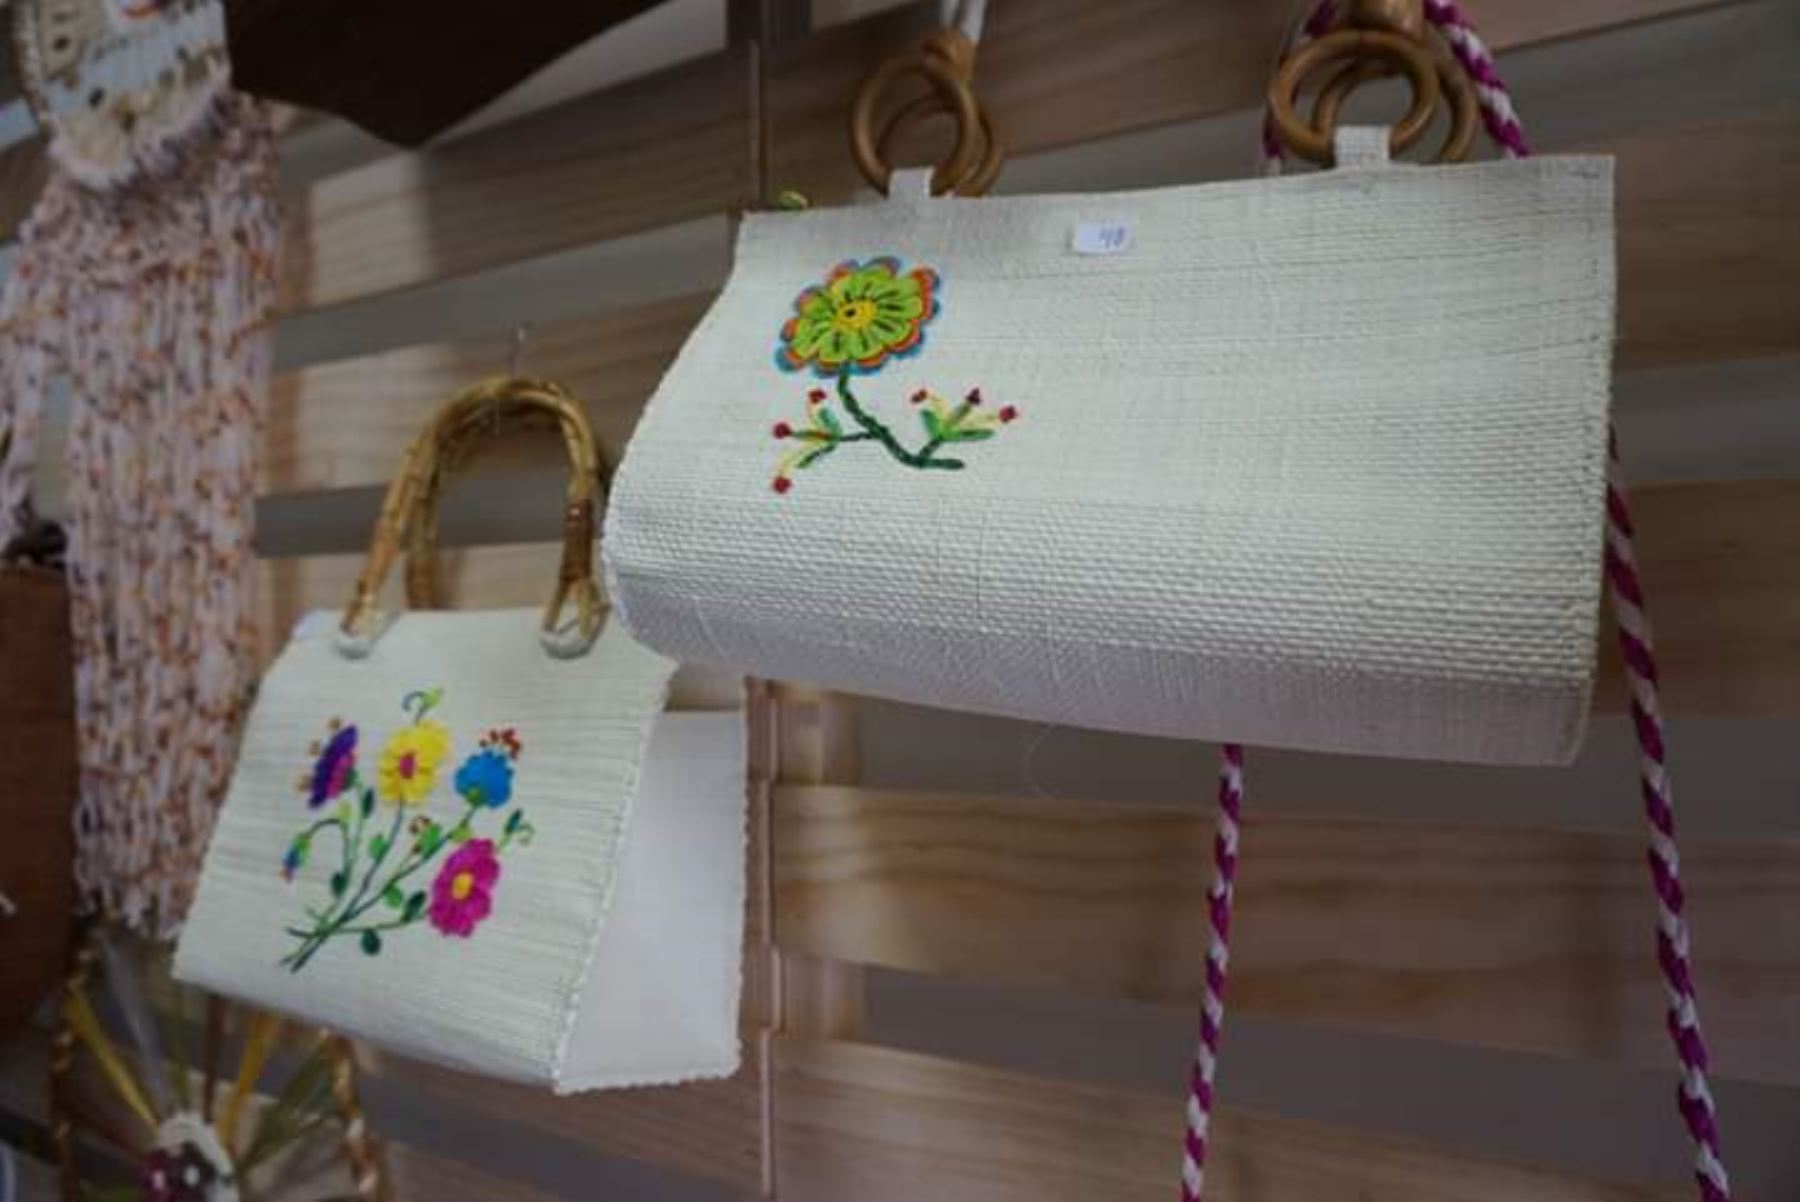 Artesanas de Lambayeque desarrollan innovadoras colecciones en algodón nativo, lana de ovino, fibra vegetal y bordados. Foto:ANDINA/Difusión